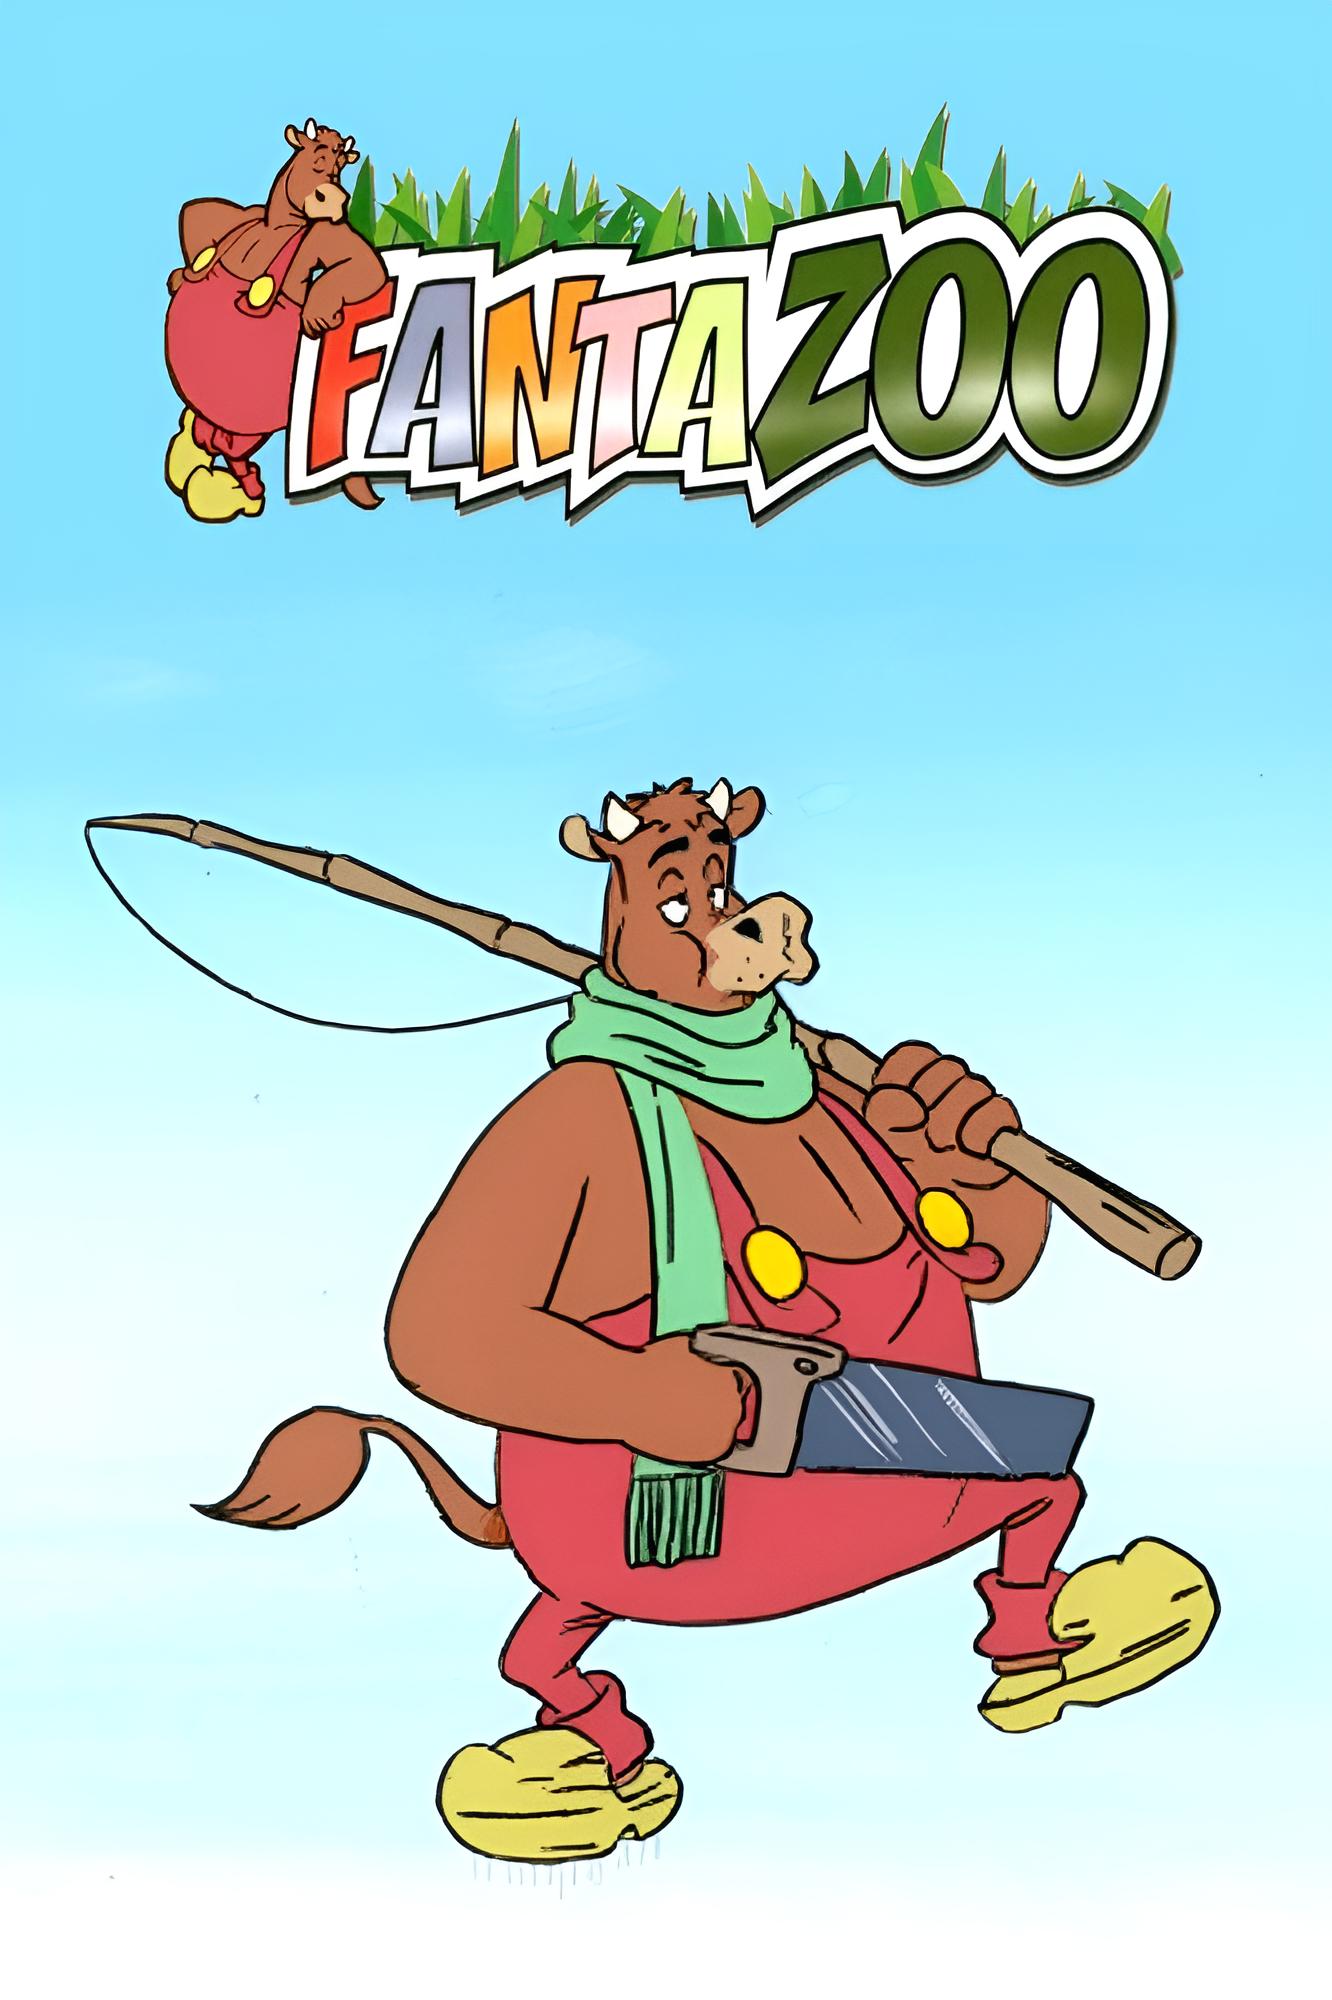 Fantazoo